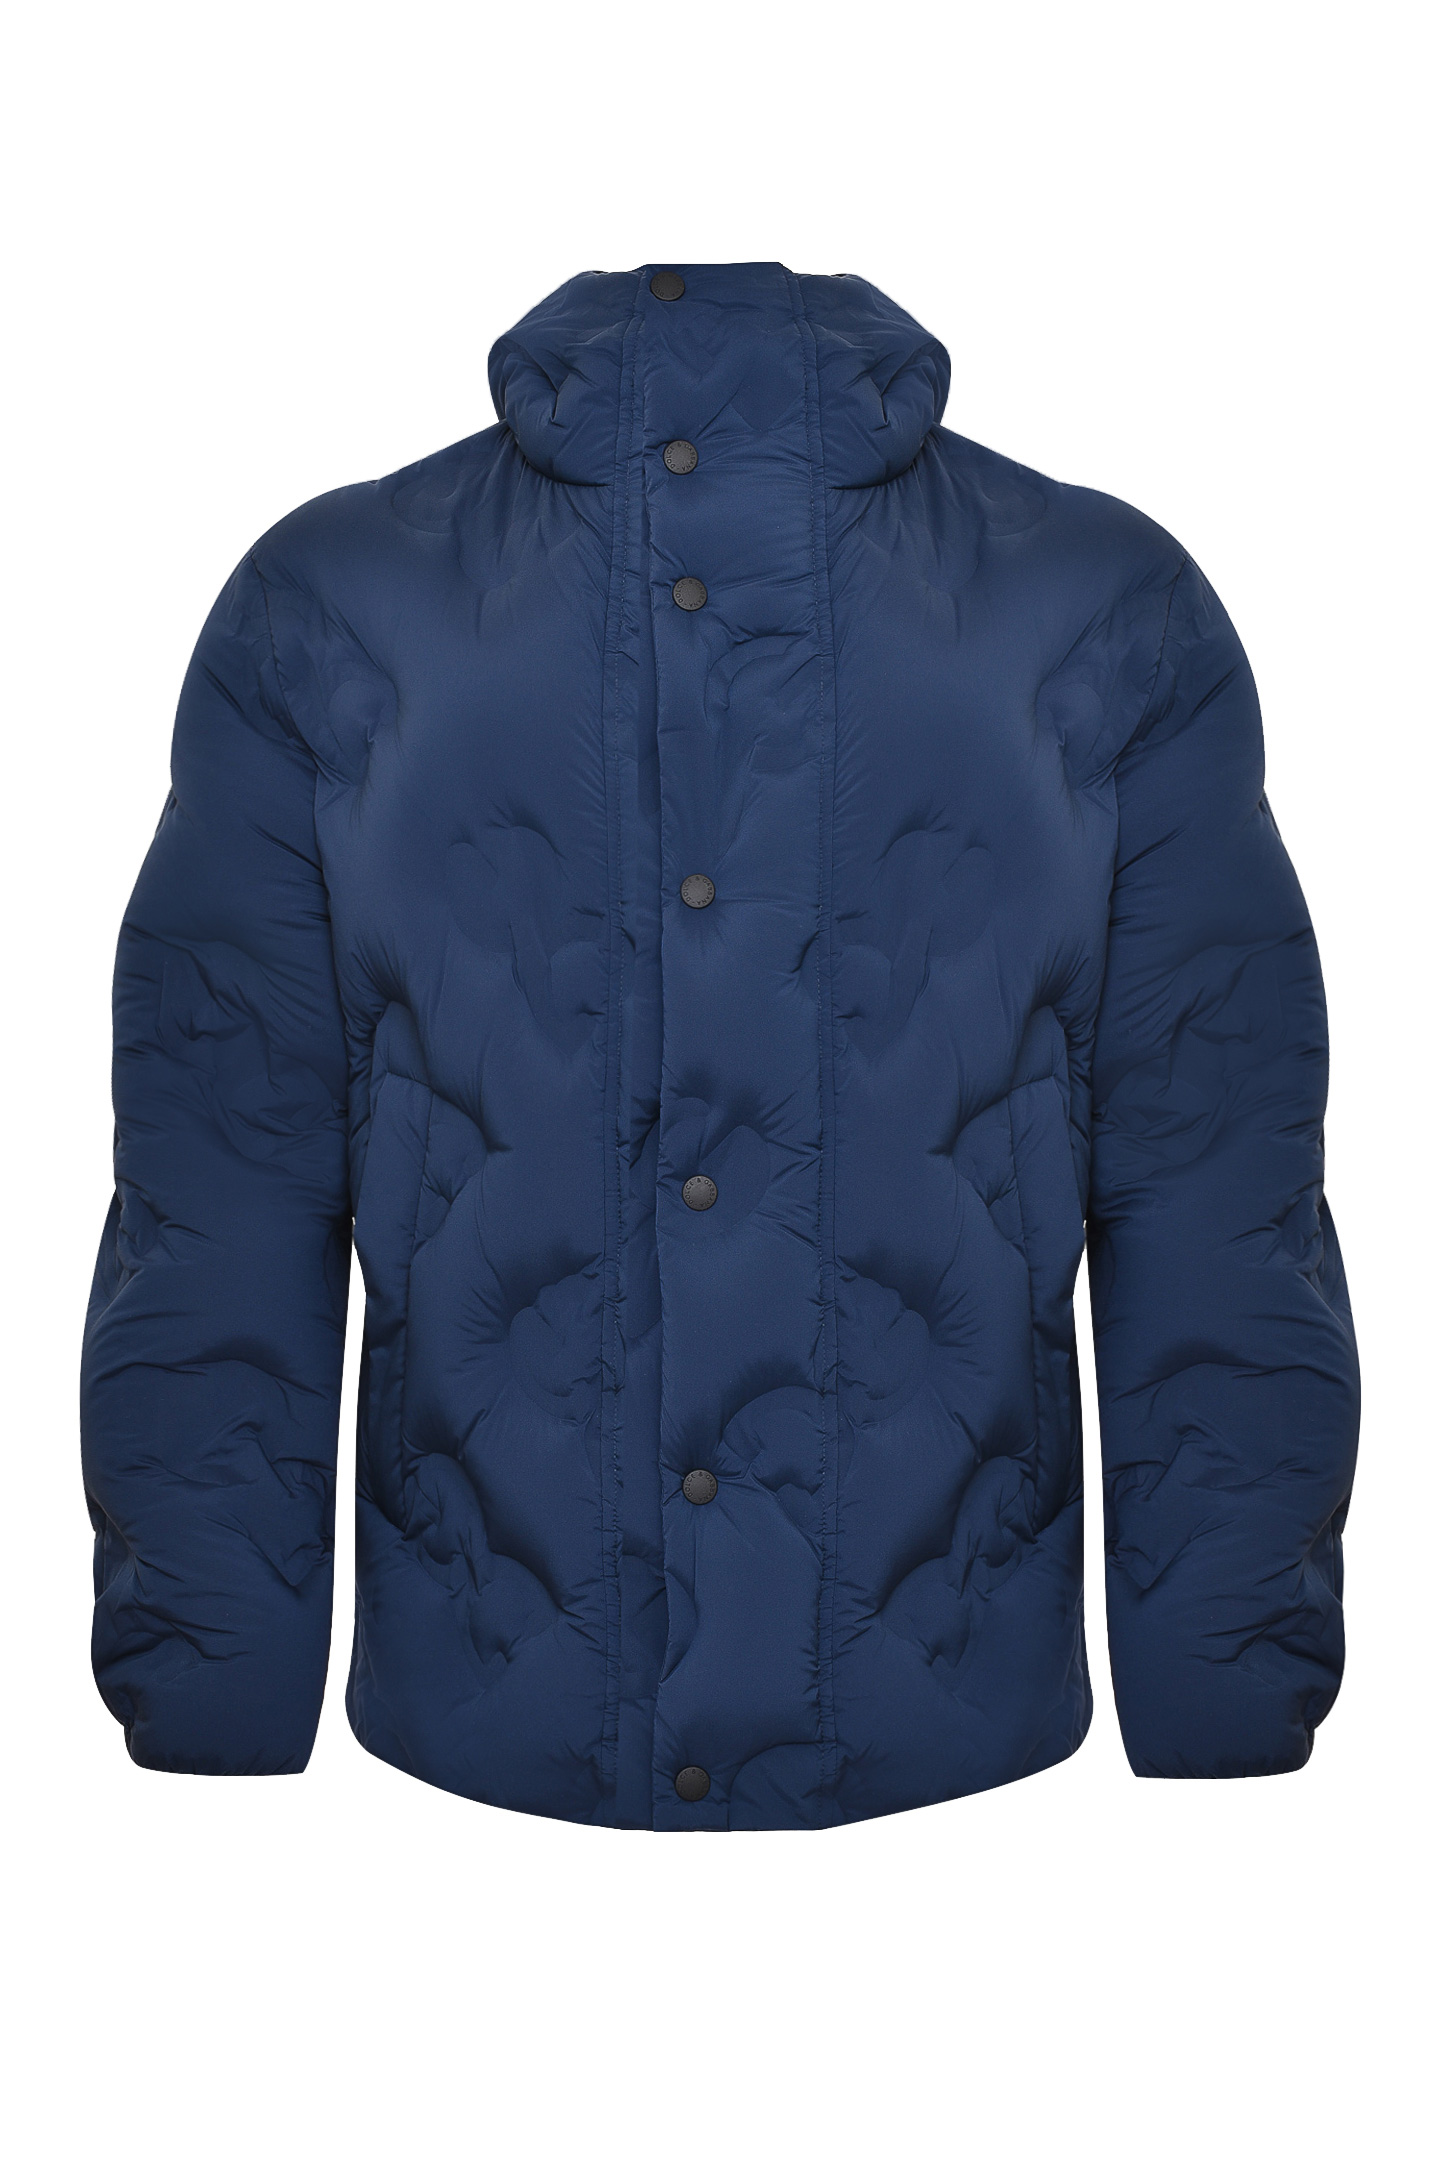 Куртка DOLCE & GABBANA G9VT0T GEU35, цвет: Синий, Мужской